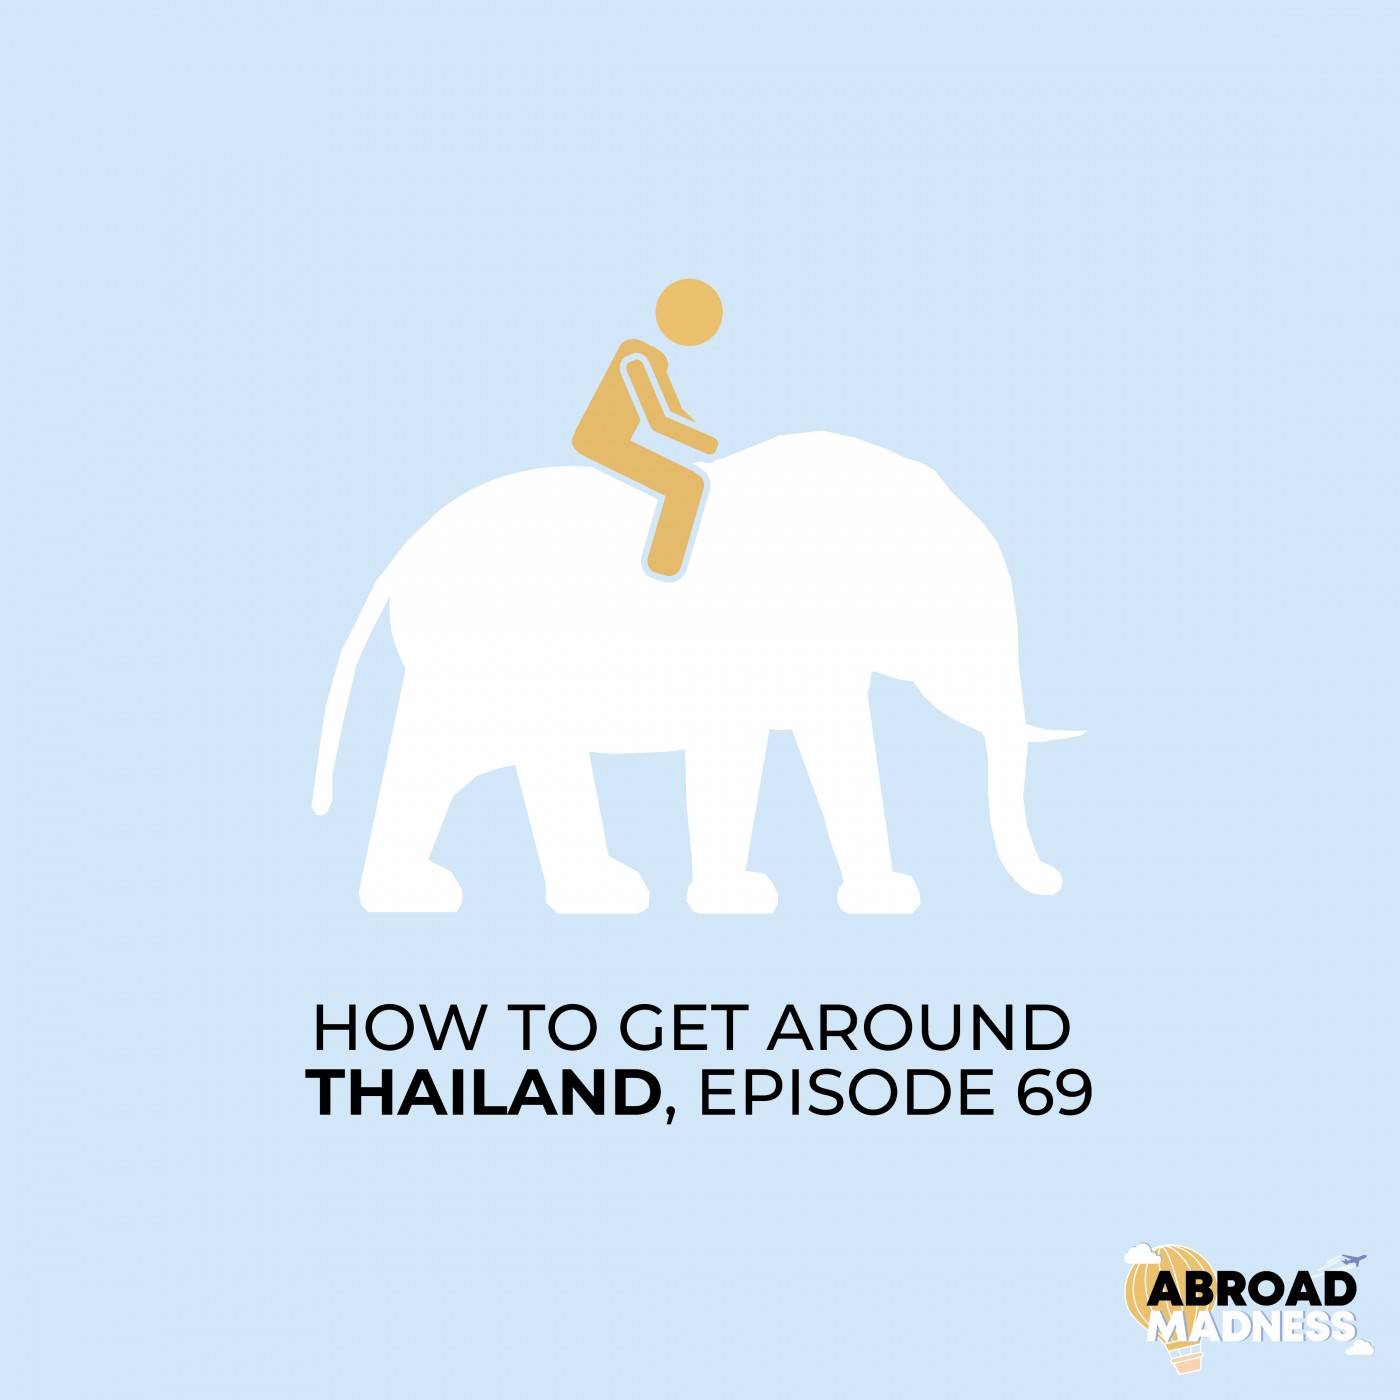 How to get around Thailand, Episode 69